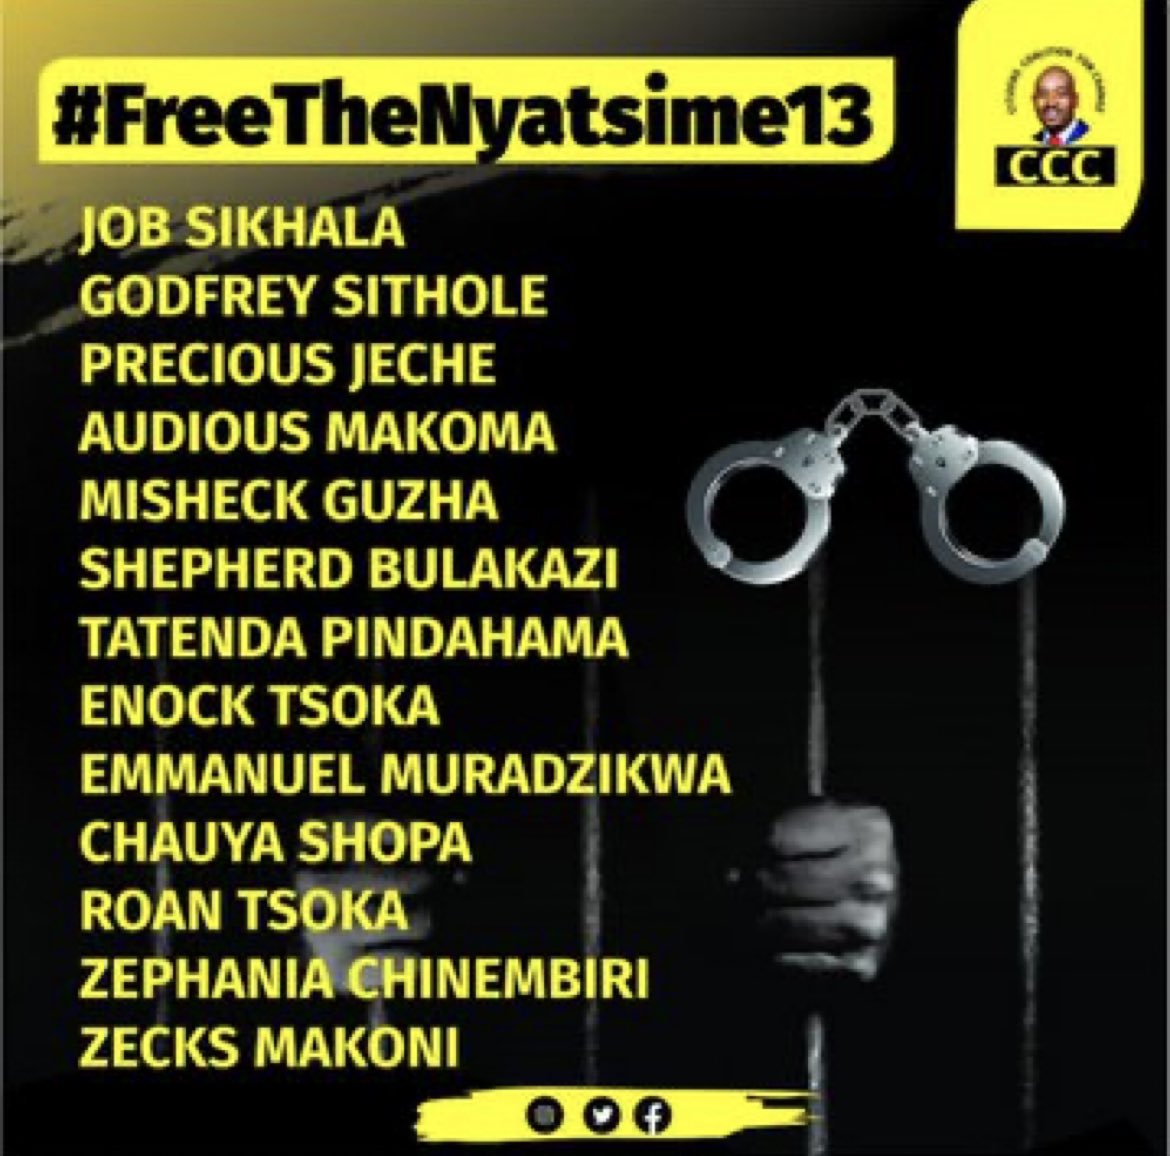 #FreeTheNyatsime13